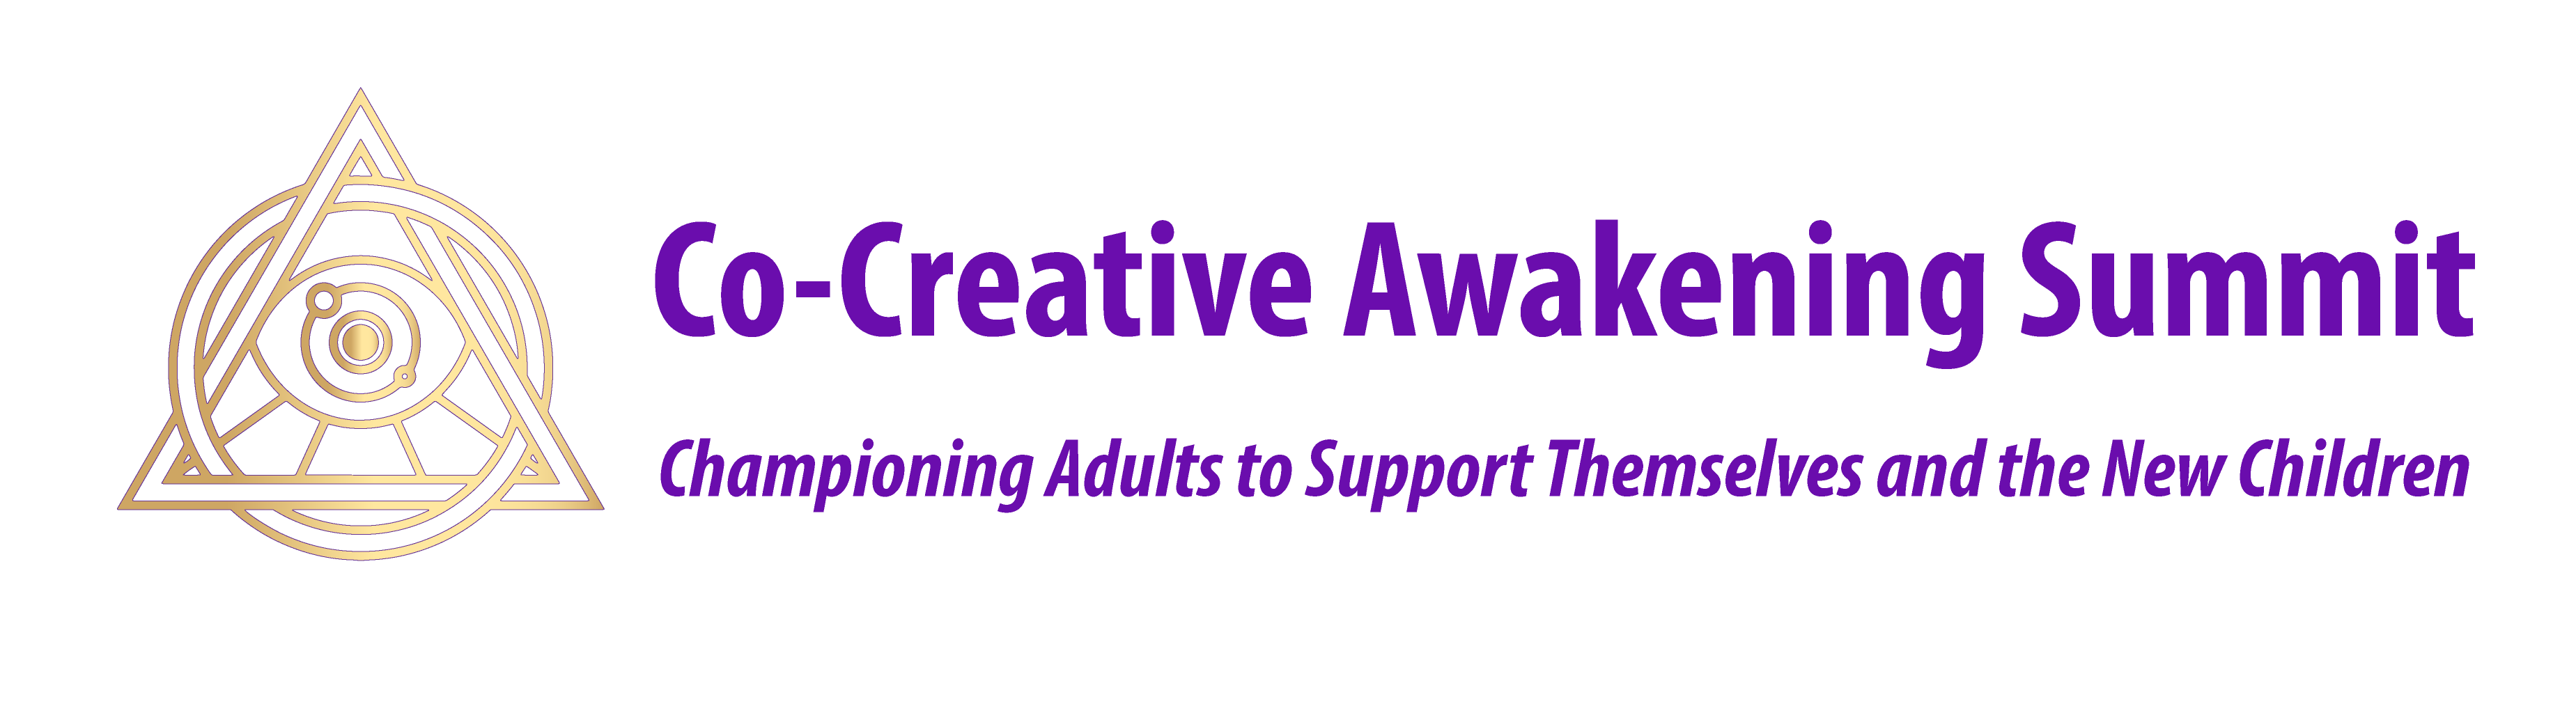 Co-Creative Awakening Summit